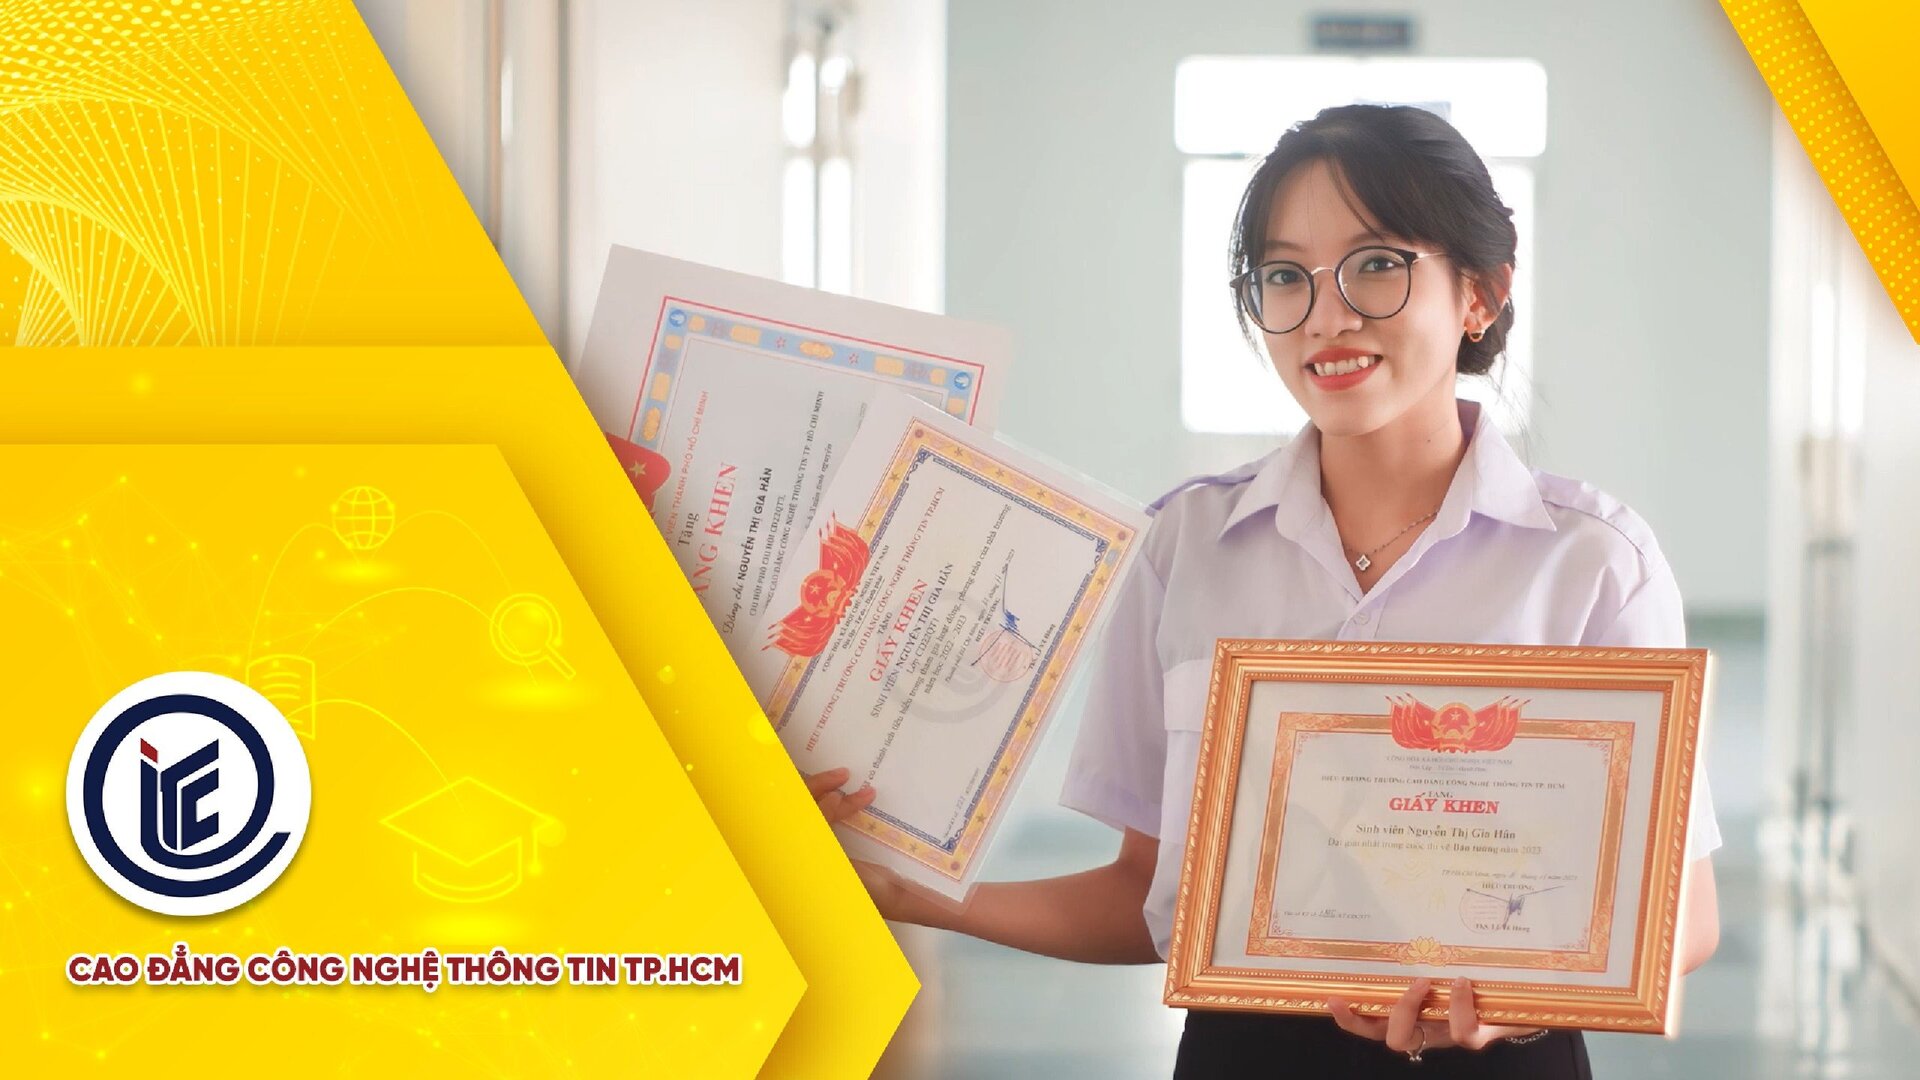 CV sinh viên Nguyễn Thị Gia Hân - Giải Nhì cuộc thi làm CV bằng video của Khoa Kinh tế ITC